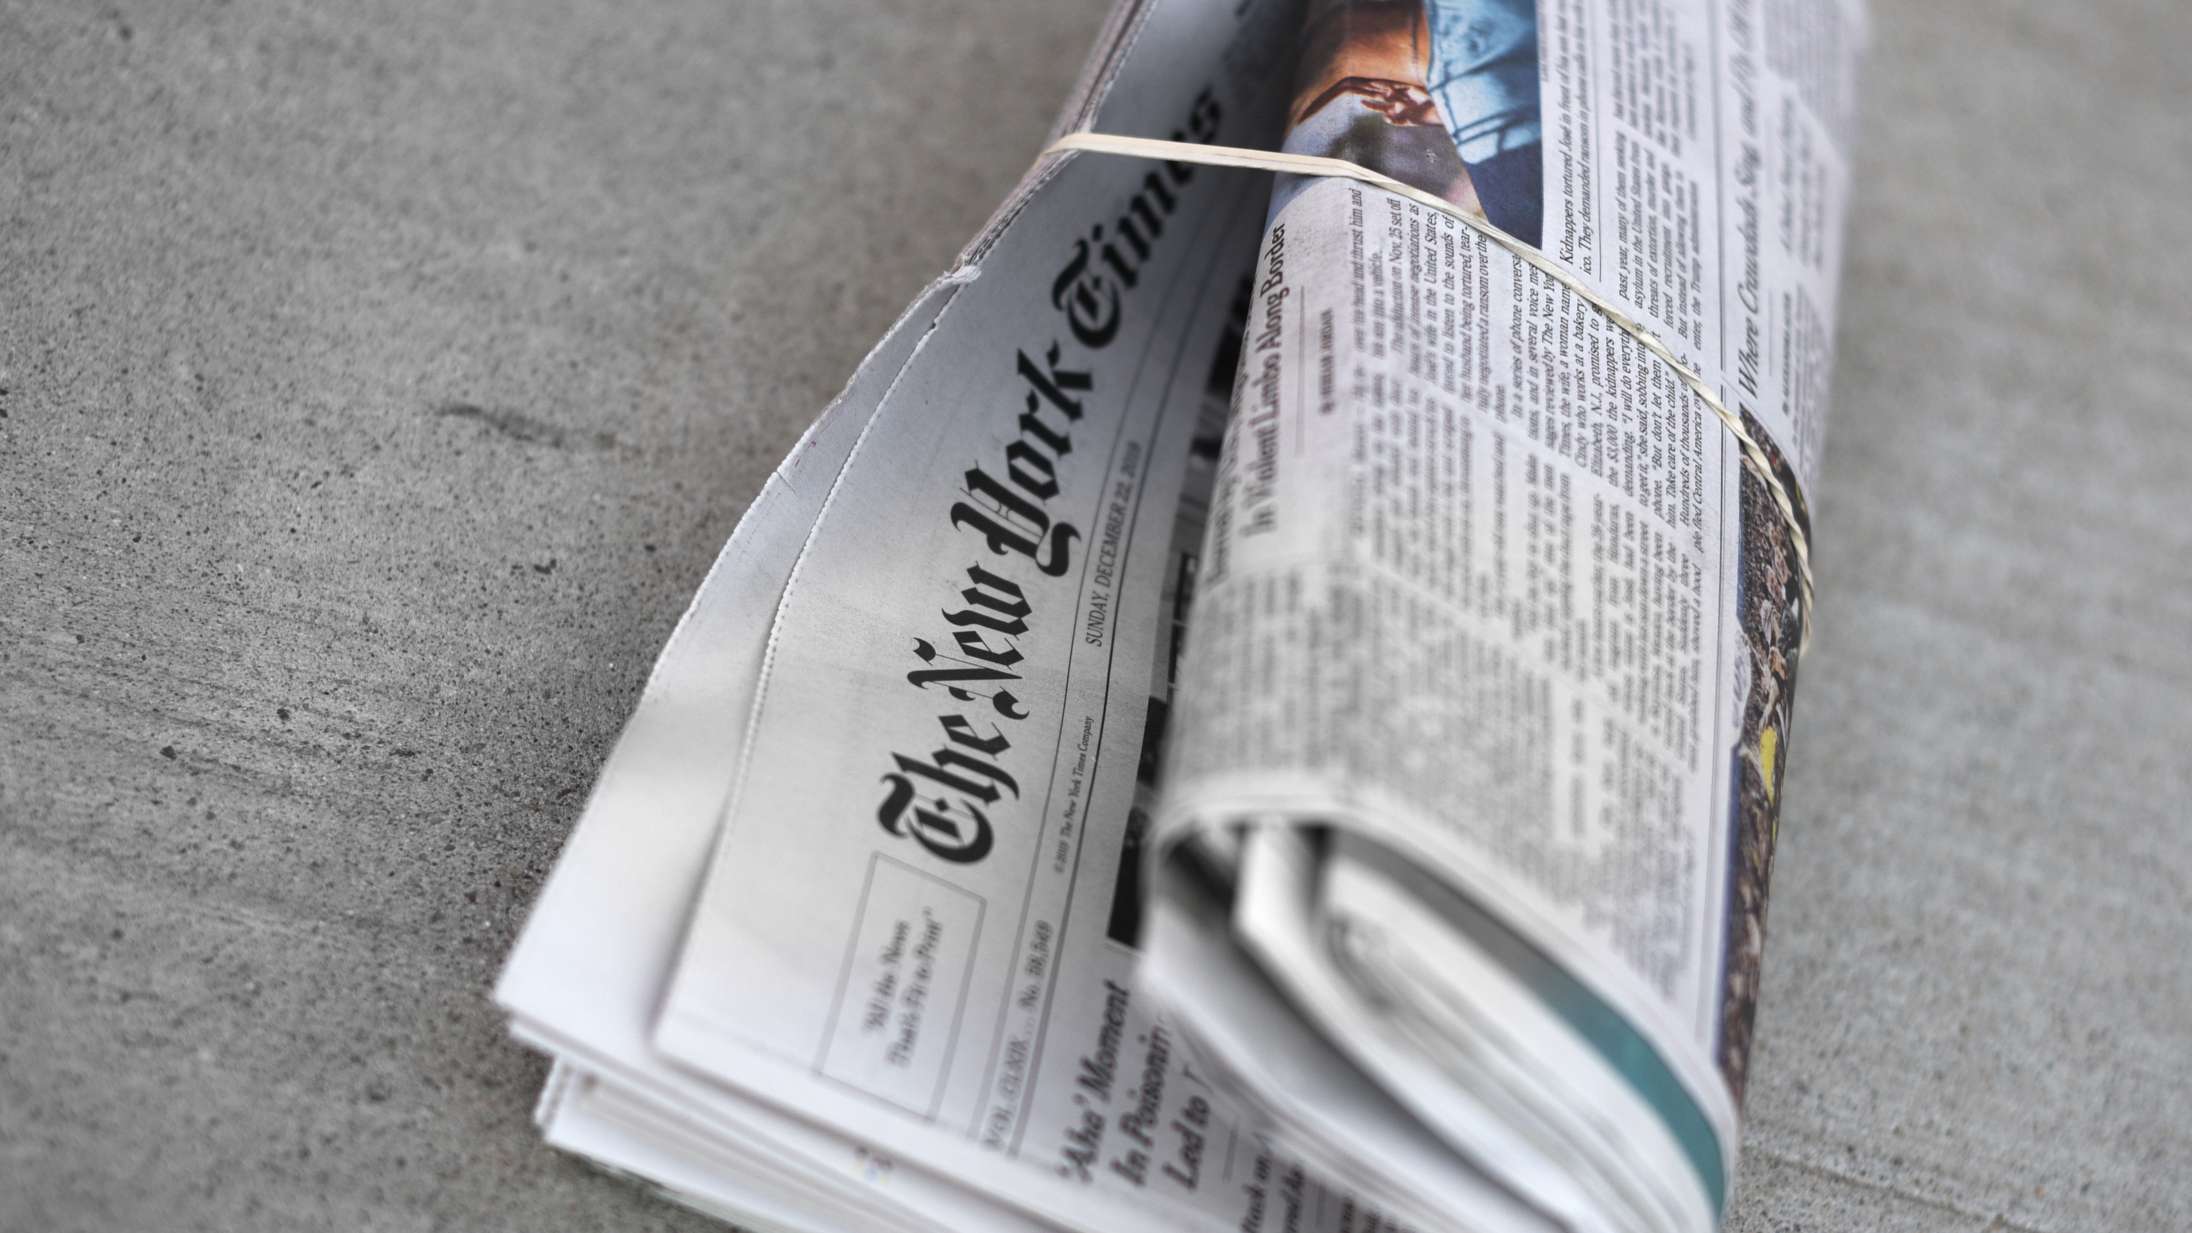 The New York Times’ abonnenter foretrækker nu avisens spil frem for nyhederne